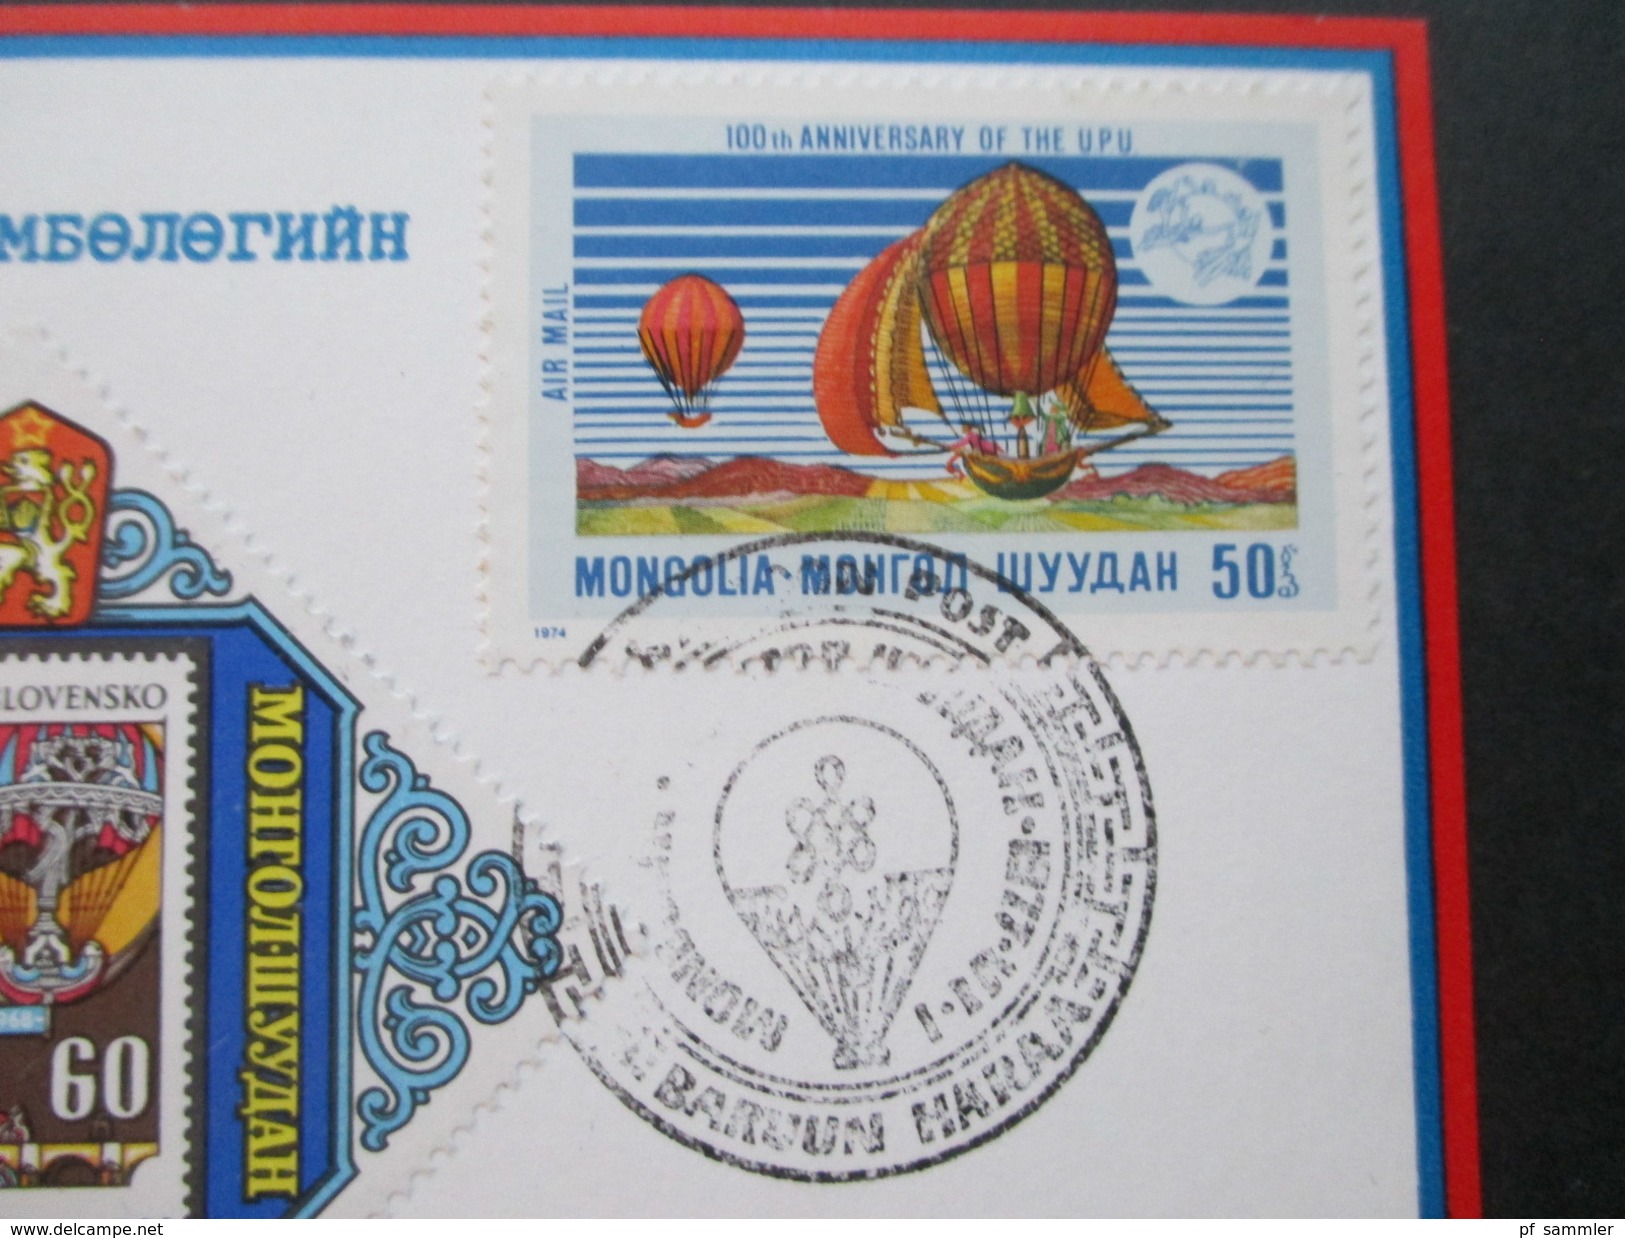 Asien / Mongolei 1977 Ballonpost. UPU. Stille Sonne. Freiballon HB - BEK - Mongolia